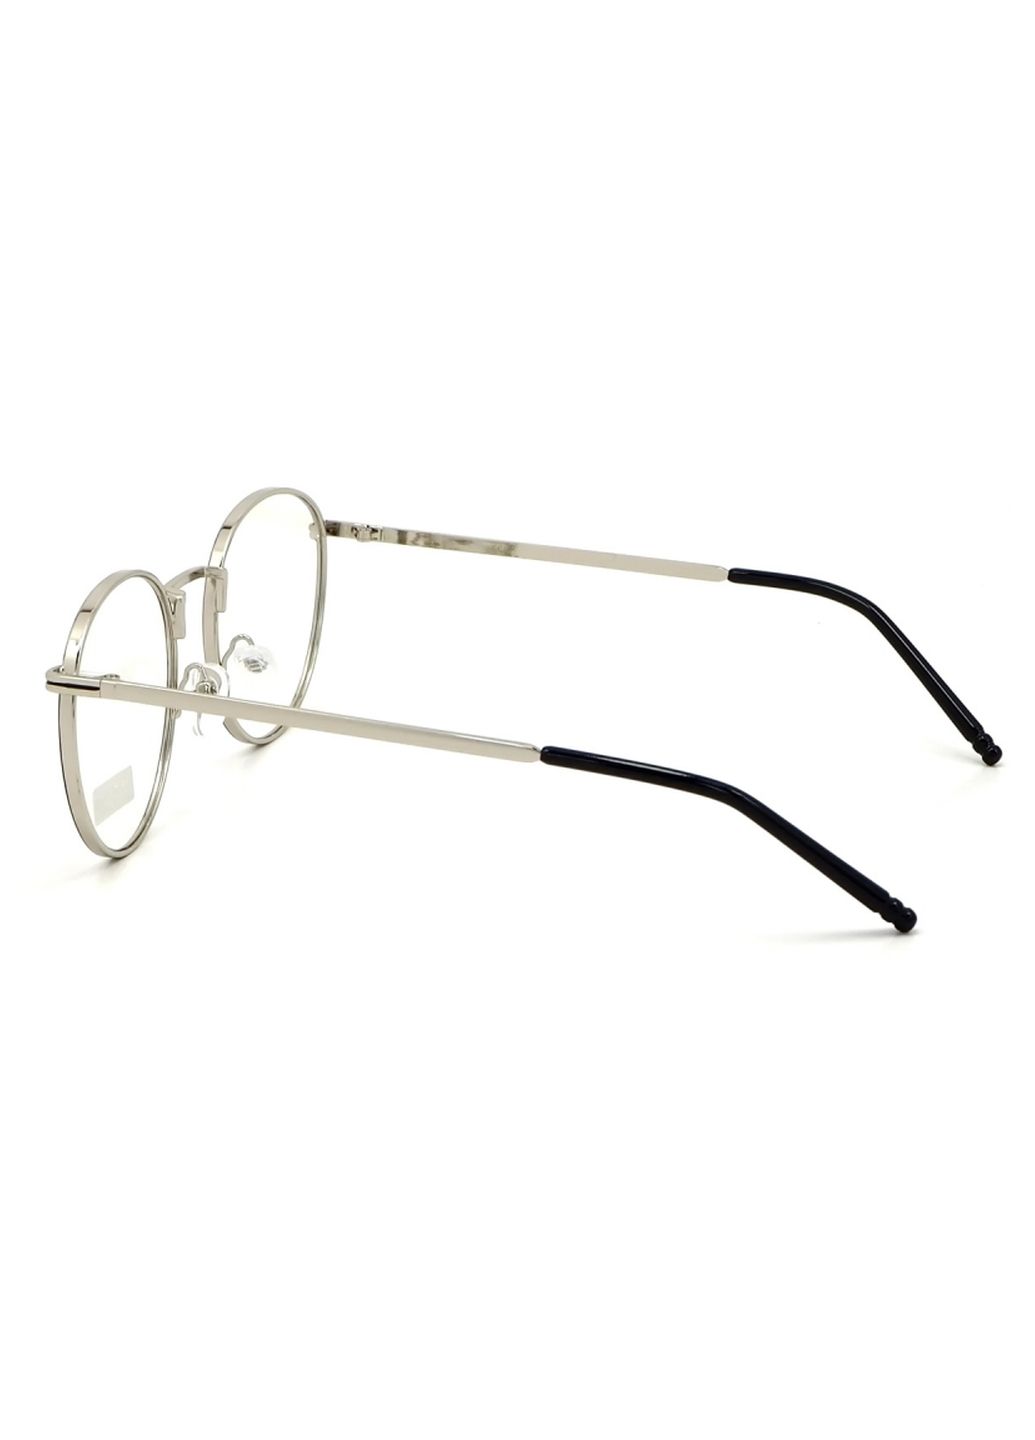 Купить Очки для работы за компьютером Cooper Glasses в серебристой оправе 124004 в интернет-магазине